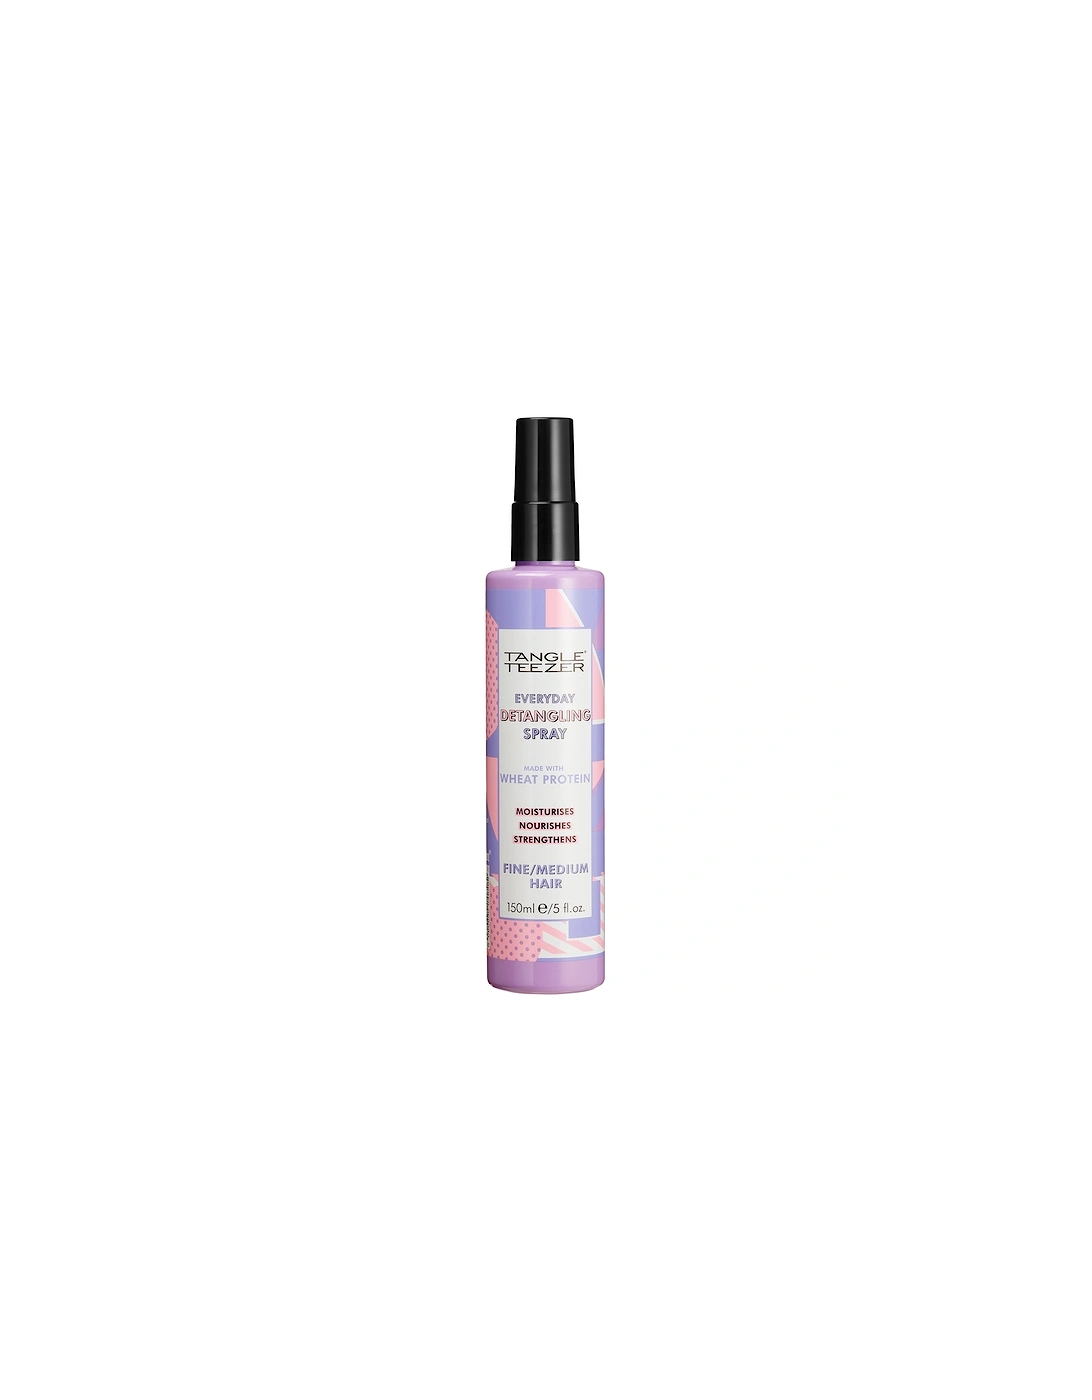 Detangling Spray for Fine/Medium Hair 150ml - Tangle Teezer, 2 of 1